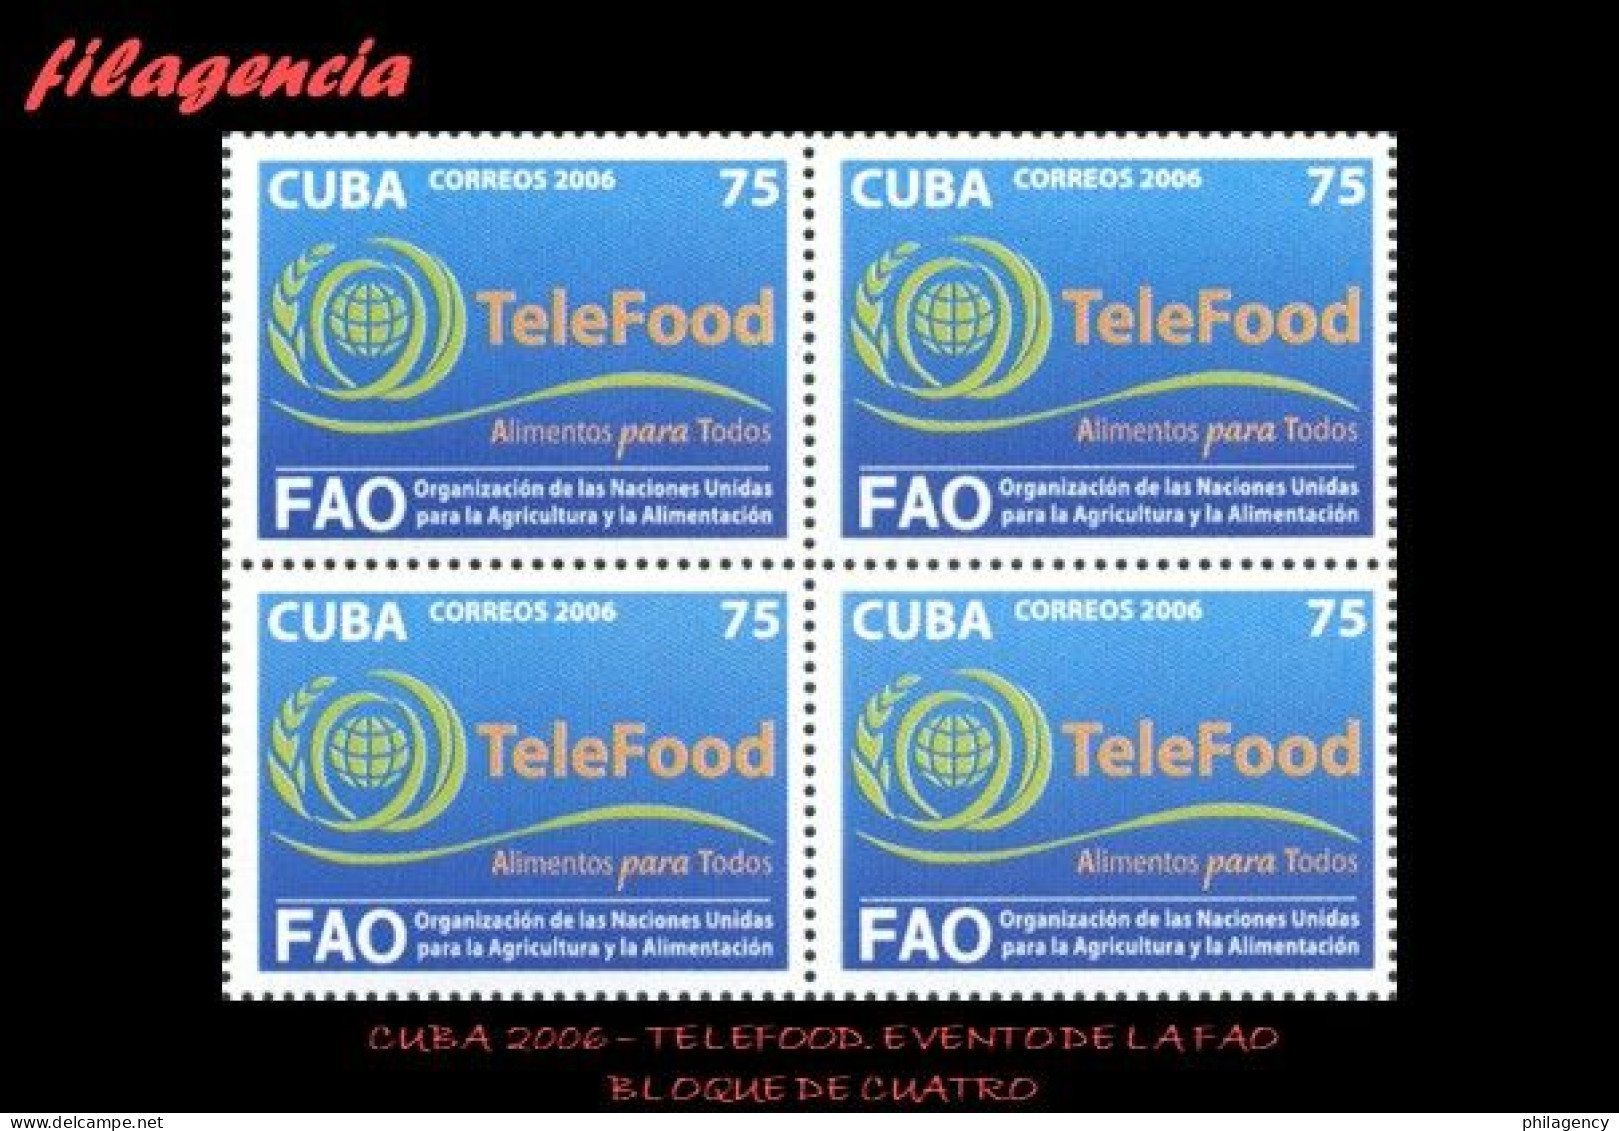 CUBA. BLOQUES DE CUATRO. 2006-29 EVENTO DE LA FAO TELEFOOD - Nuovi